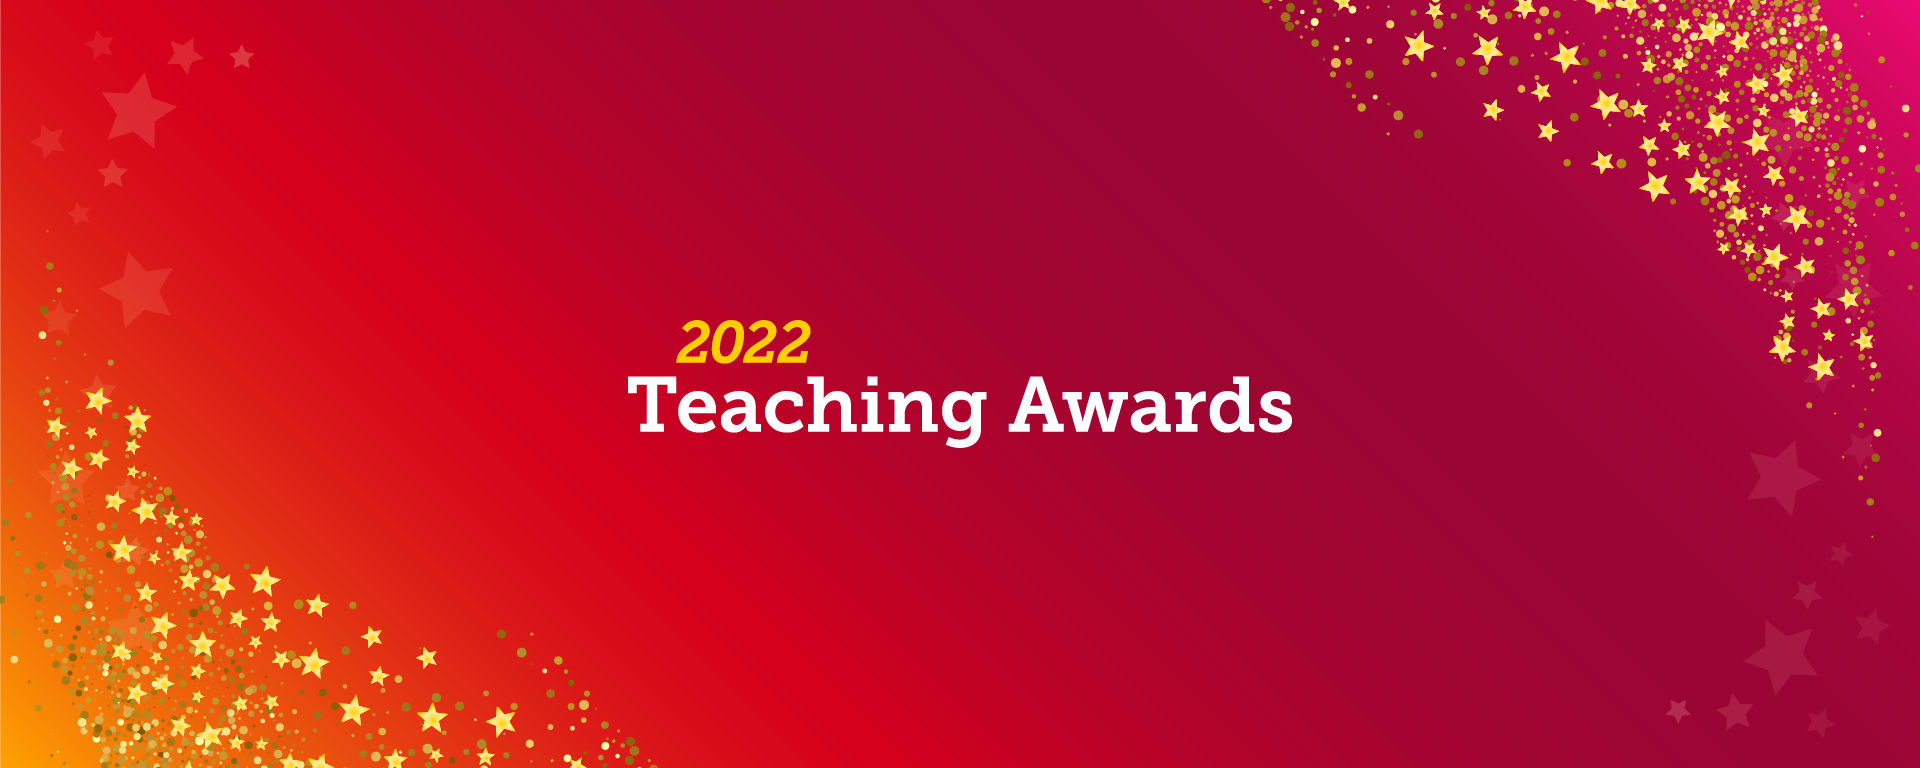 2022 Teaching Awards